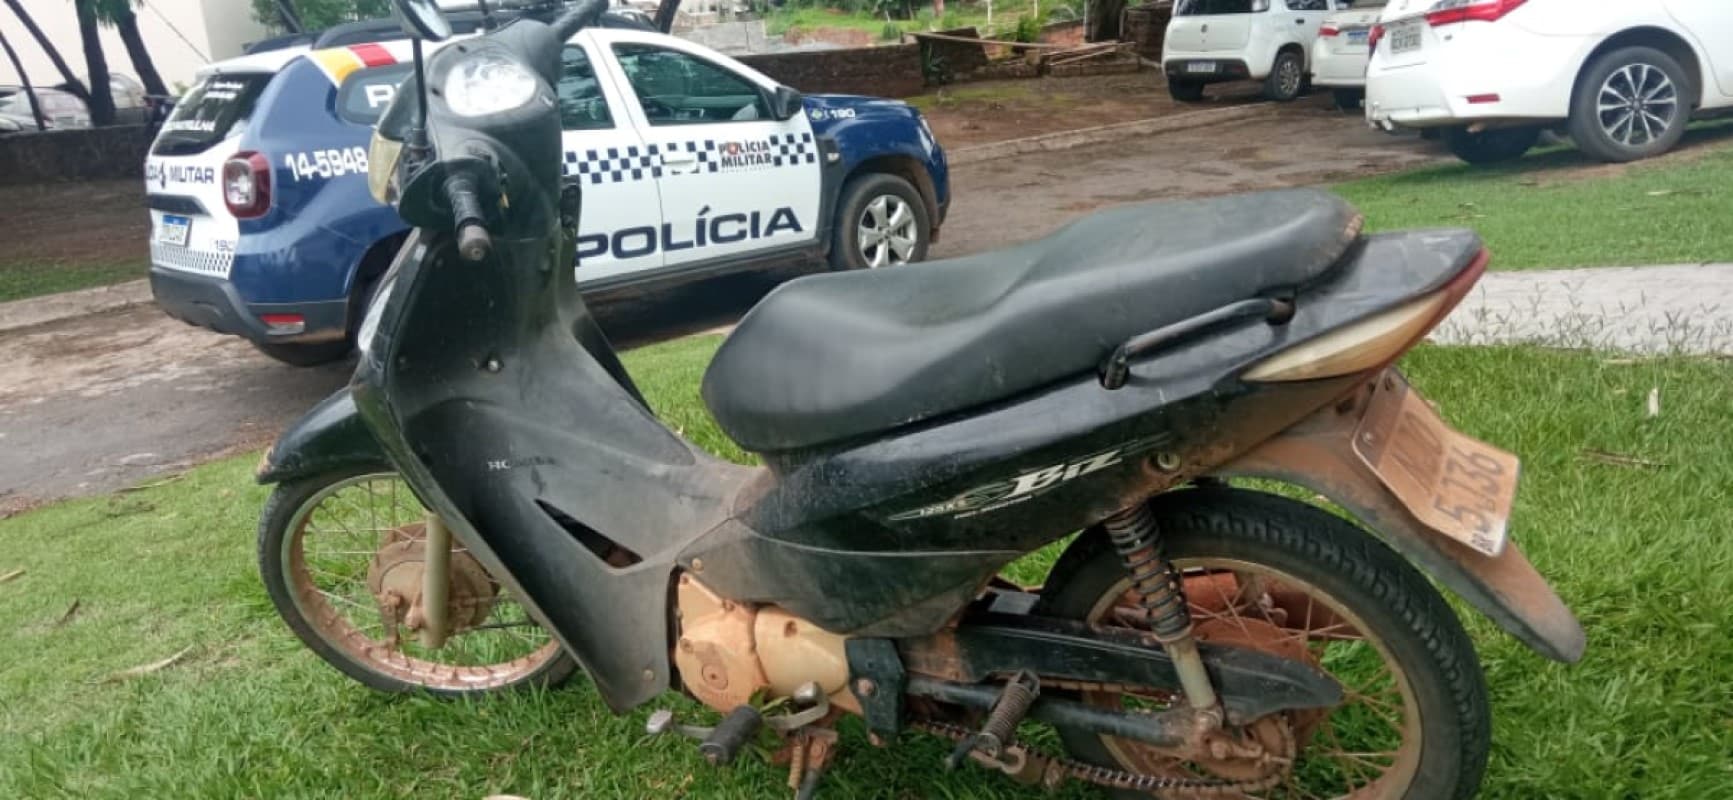 Moto Honda Biz furtada pertence a prefeitura de Lucas do Rio Verde